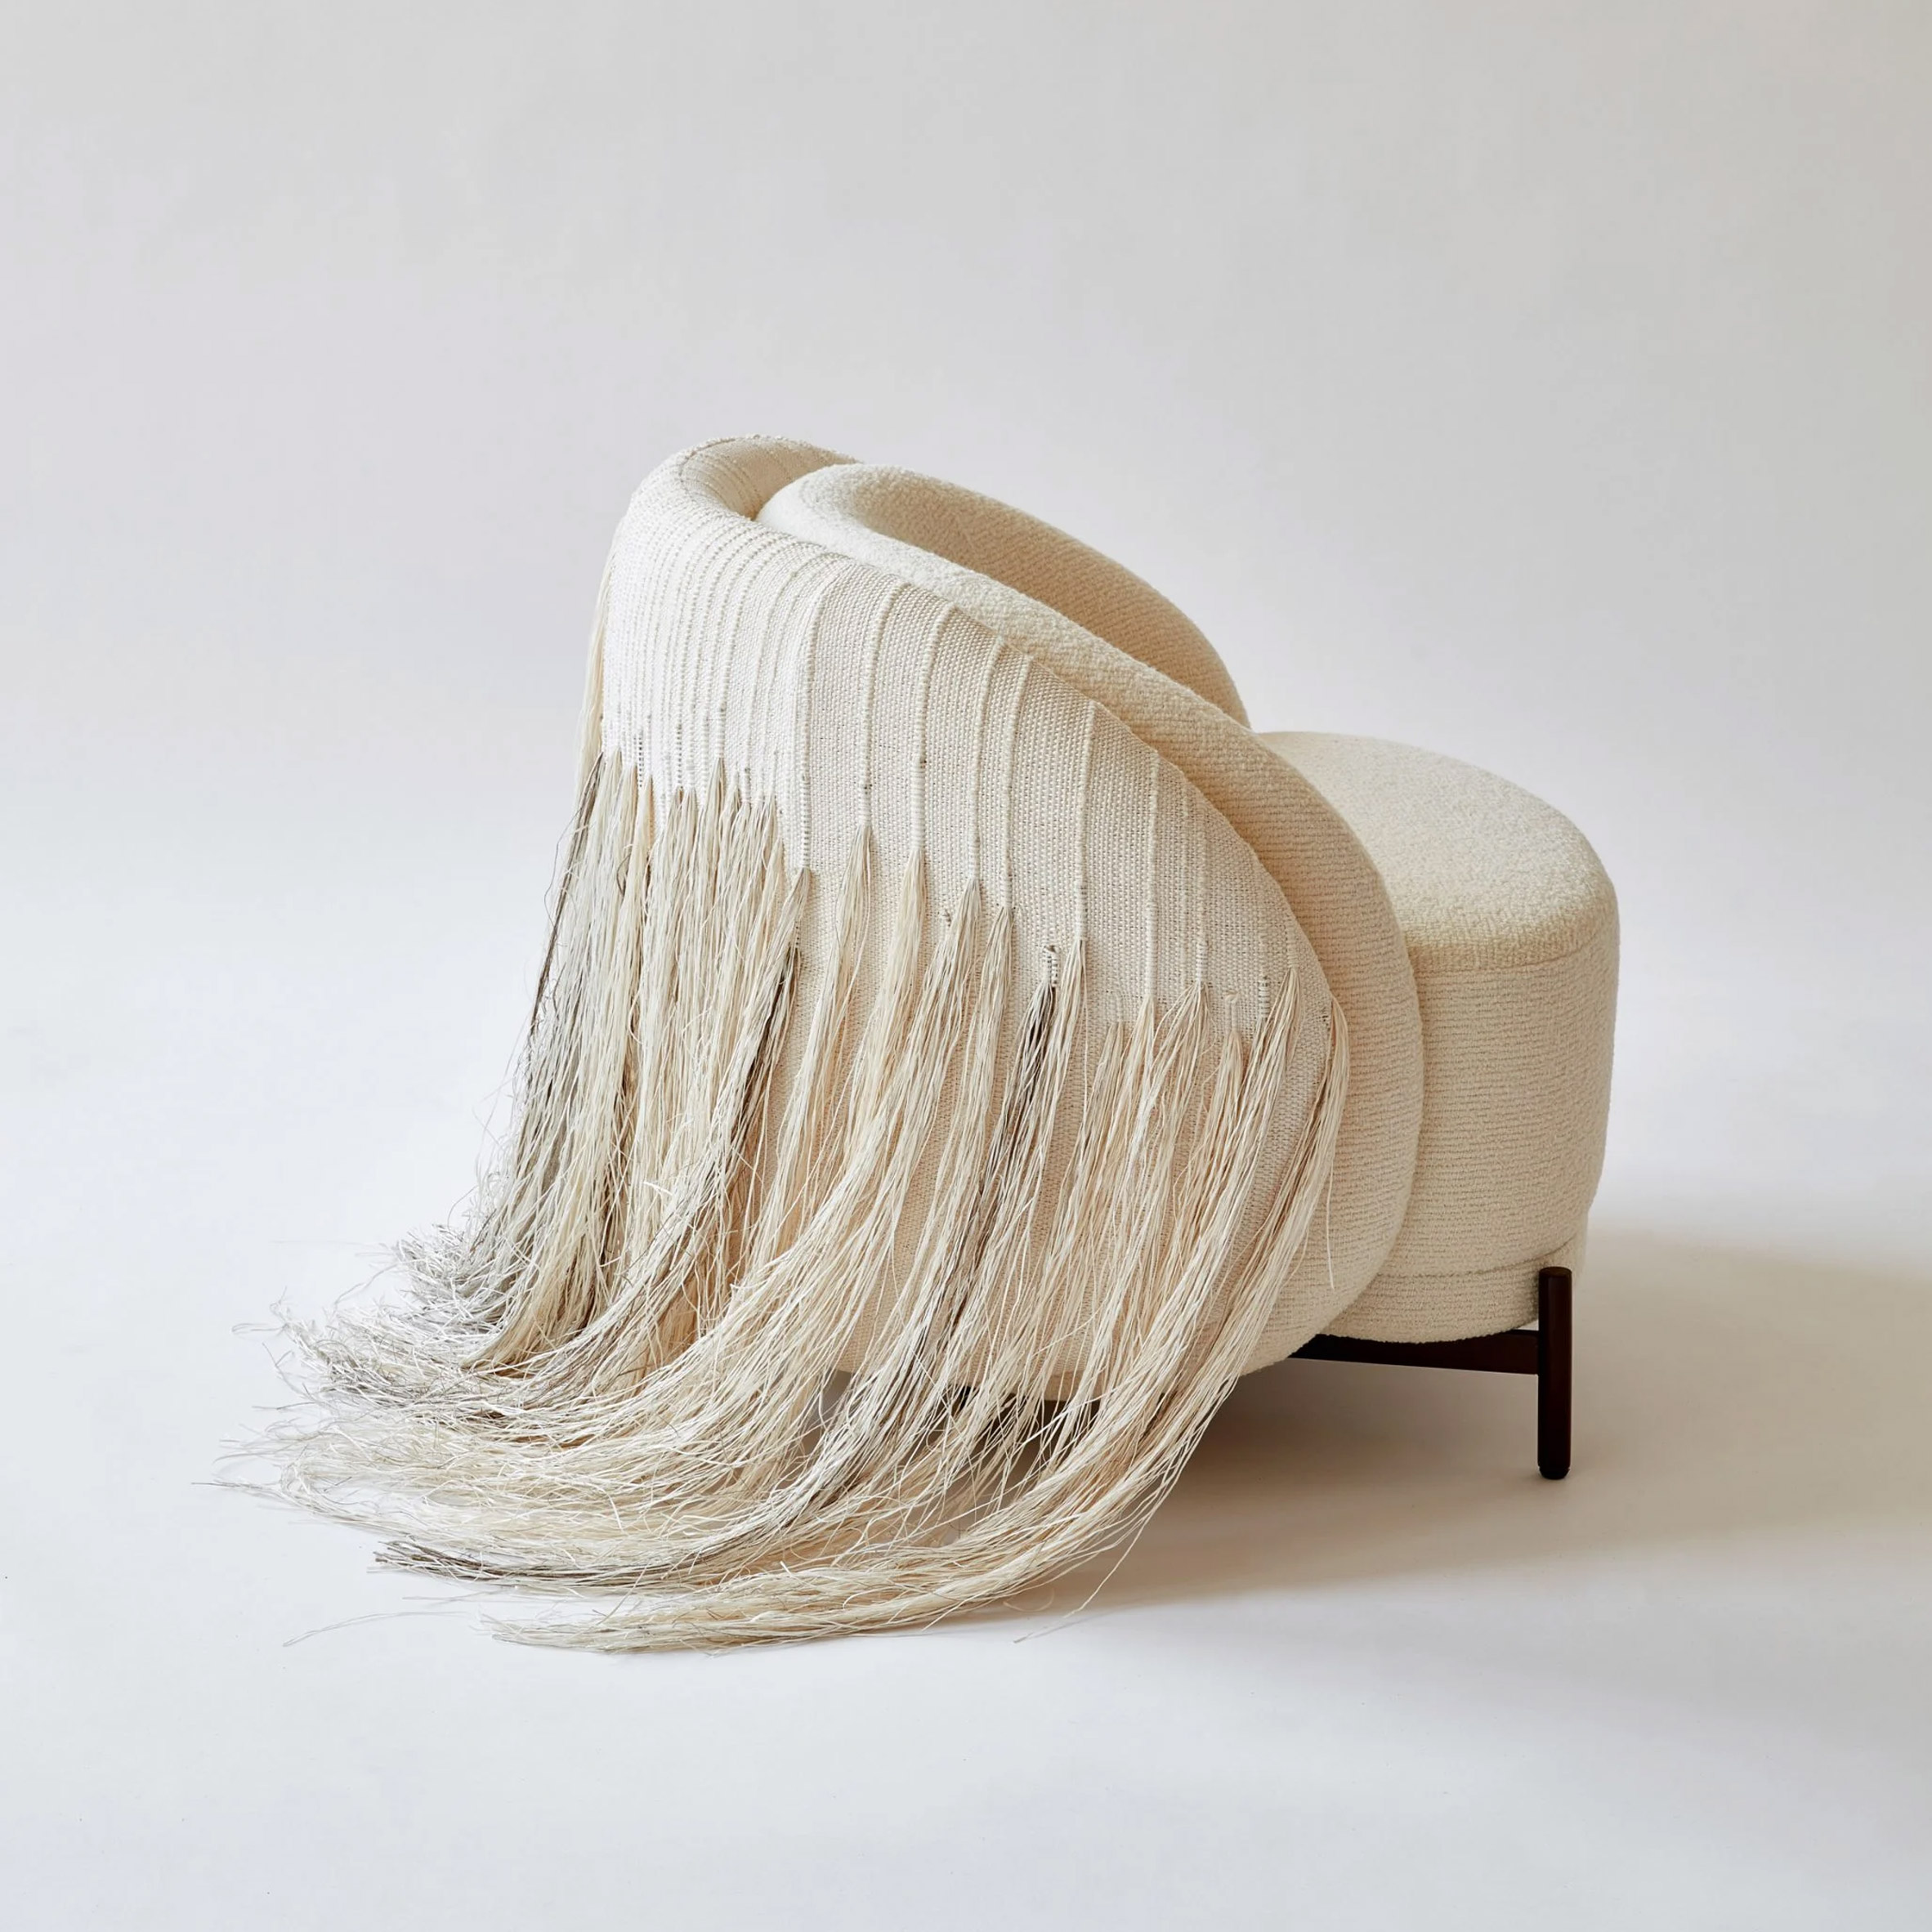 AME Natural Lounge chair by Paolo Ferrari via Twentieth